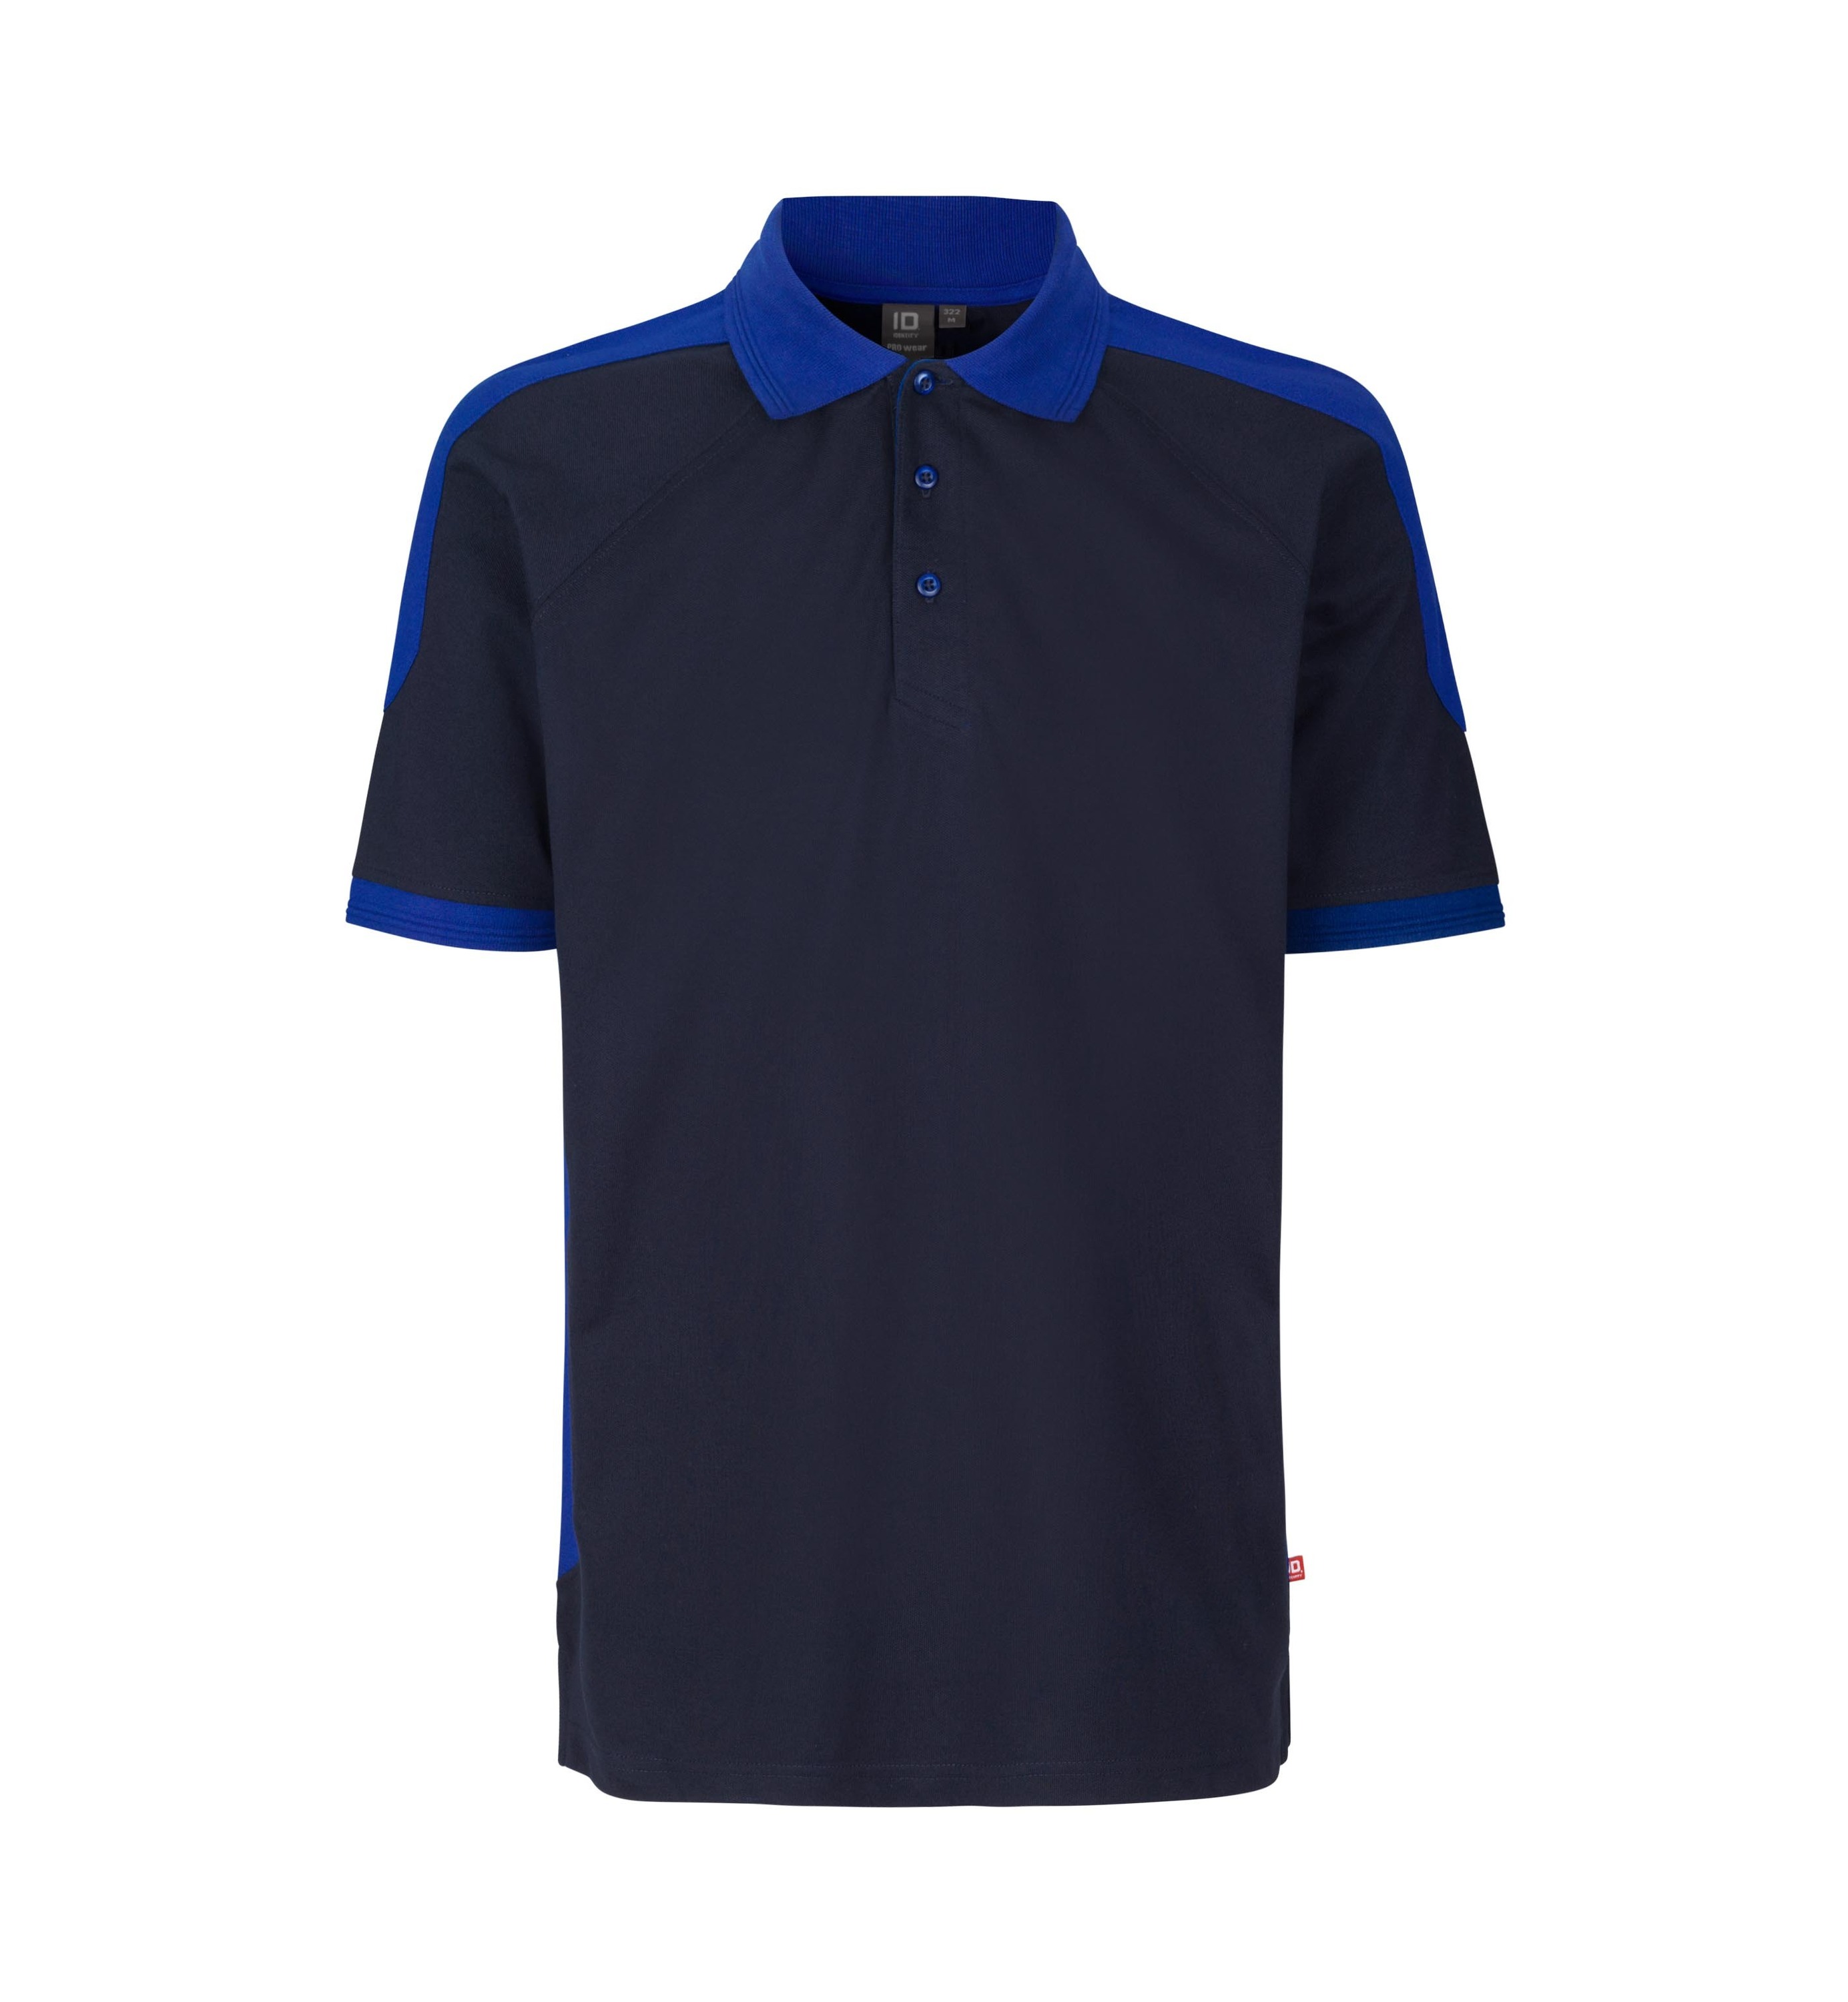 Поло PRO Wear by ID Polo Shirt kontrast, темно-синий